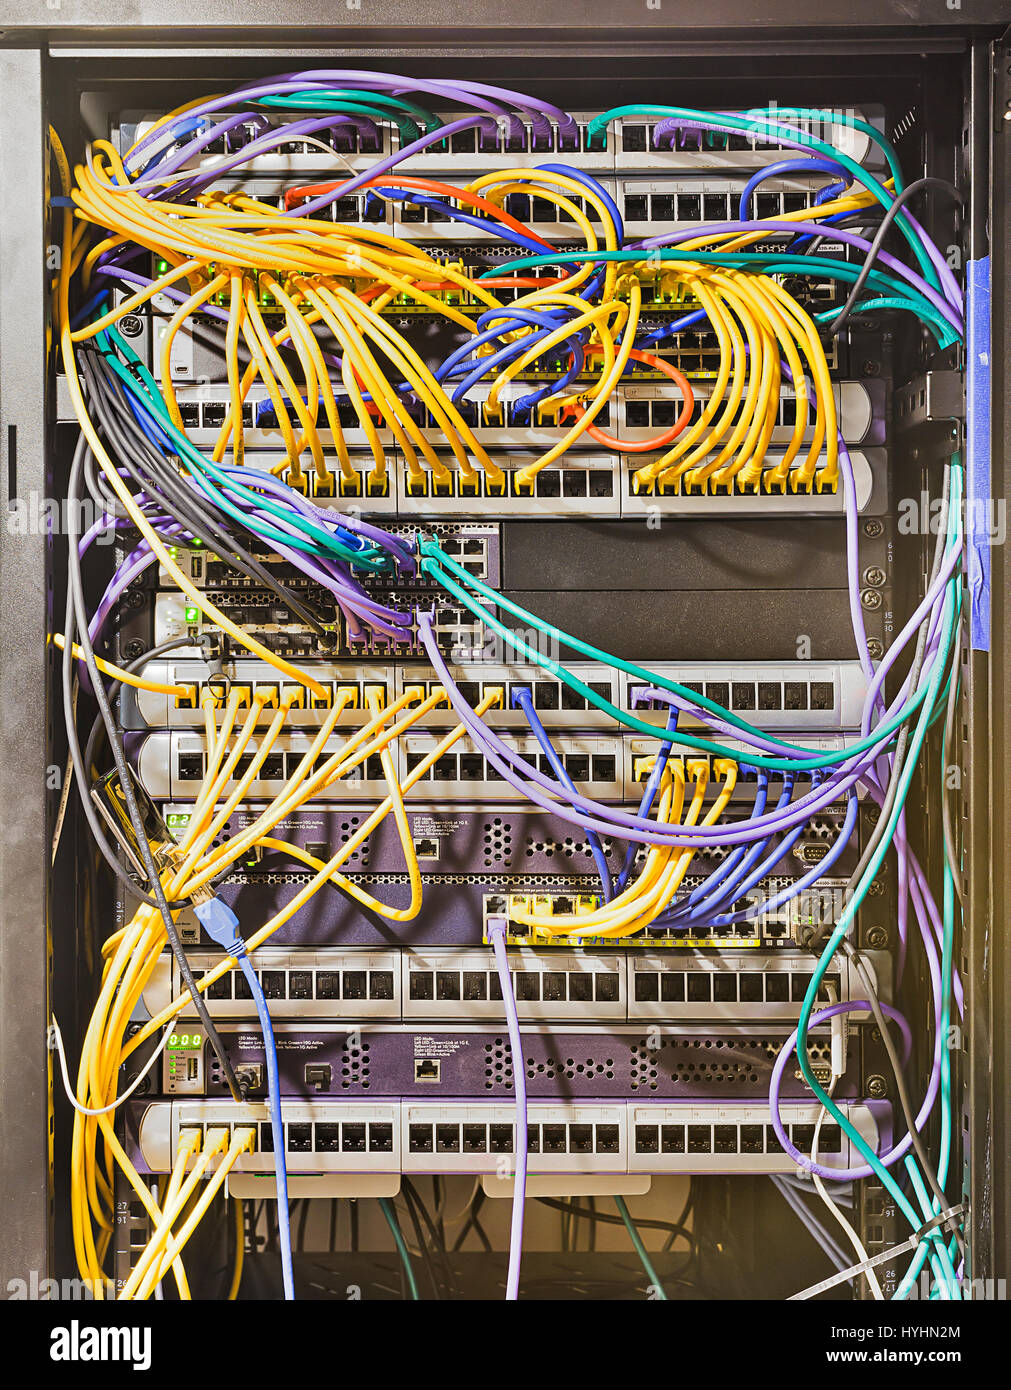 Armario rack abierto en centro de datos moderno con paneles montados, switches, routers, servidores y otros de telecomunicaciones conectados por cables de conexi n Fotografía de stock - Alamy